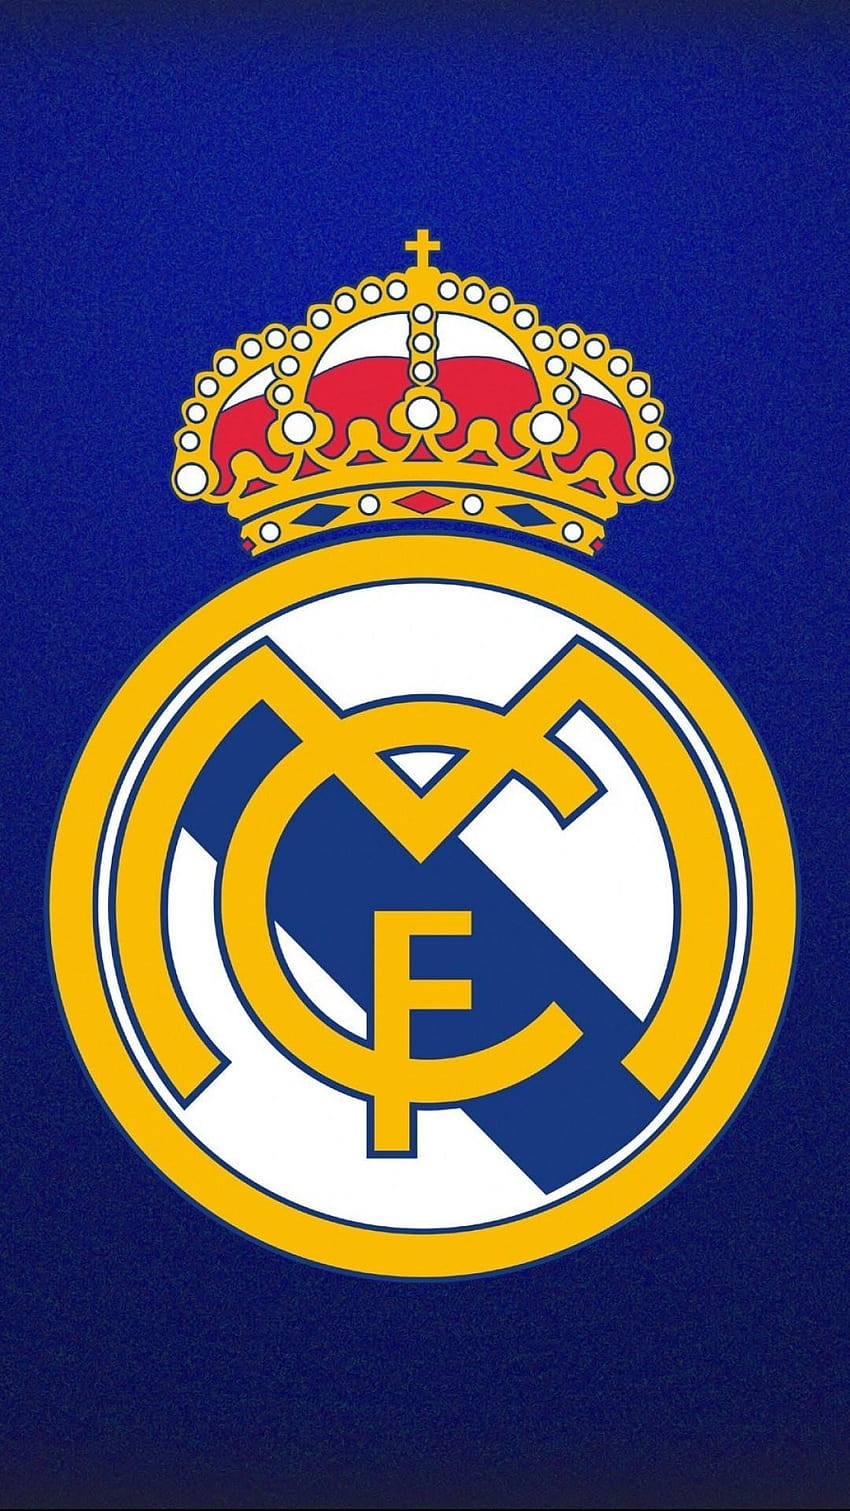 Real Madrid wallpapers - Những bức ảnh nền Real Madrid đẹp như mơ sẽ khiến bạn say mê đội bóng hàng đầu Tây Ban Nha này. Chất lượng hình ảnh HD sắc nét, sáng tạo và độc đáo, những bức ảnh nền Real Madrid sẽ khiến cho màn hình điện thoại của bạn trở nên thật phong cách và cá tính.